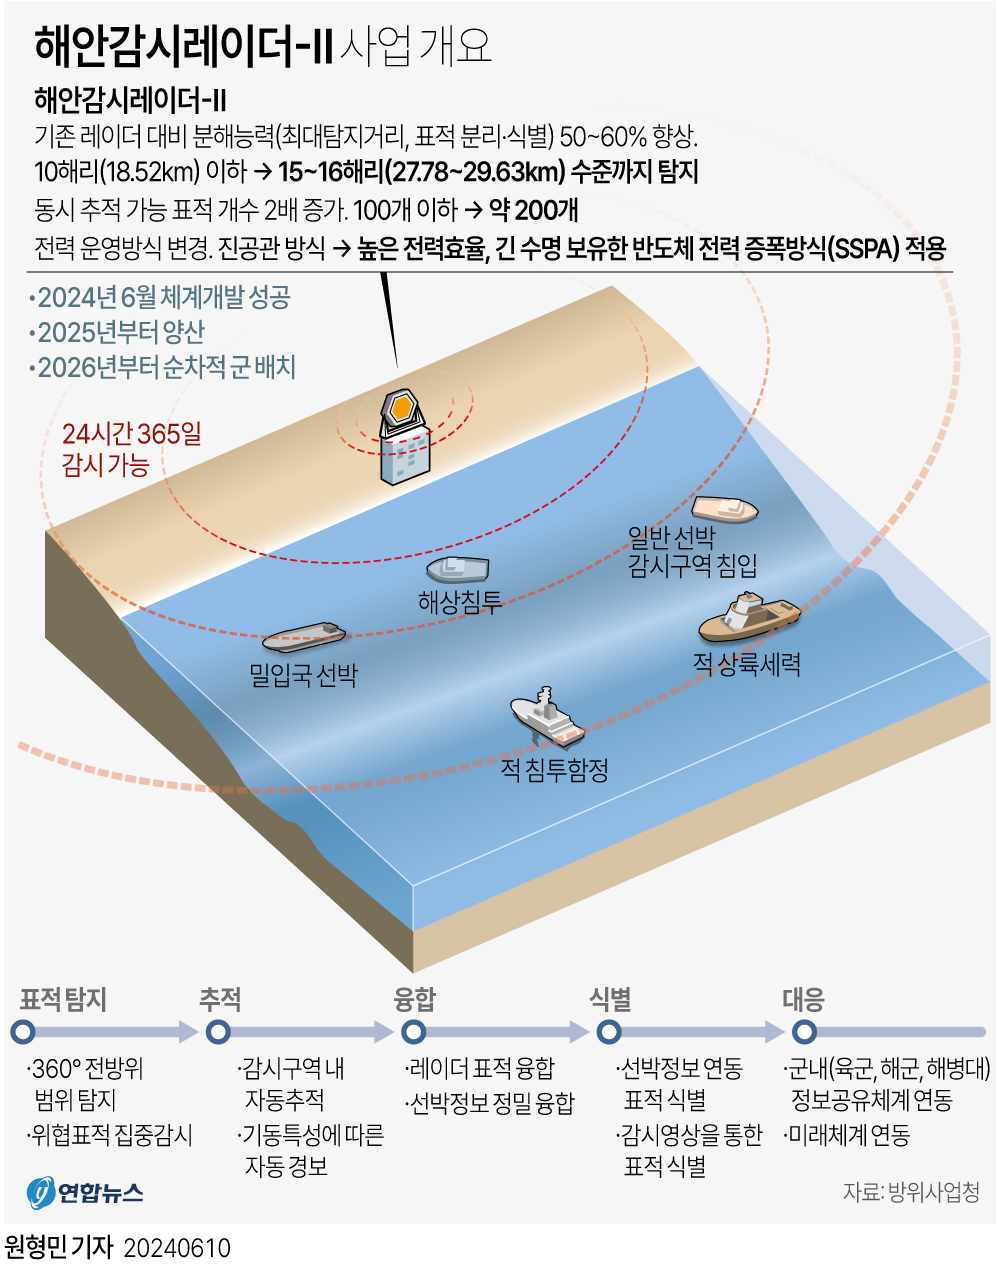 [그래픽] 해안감시레이더-Ⅱ 사업 개요